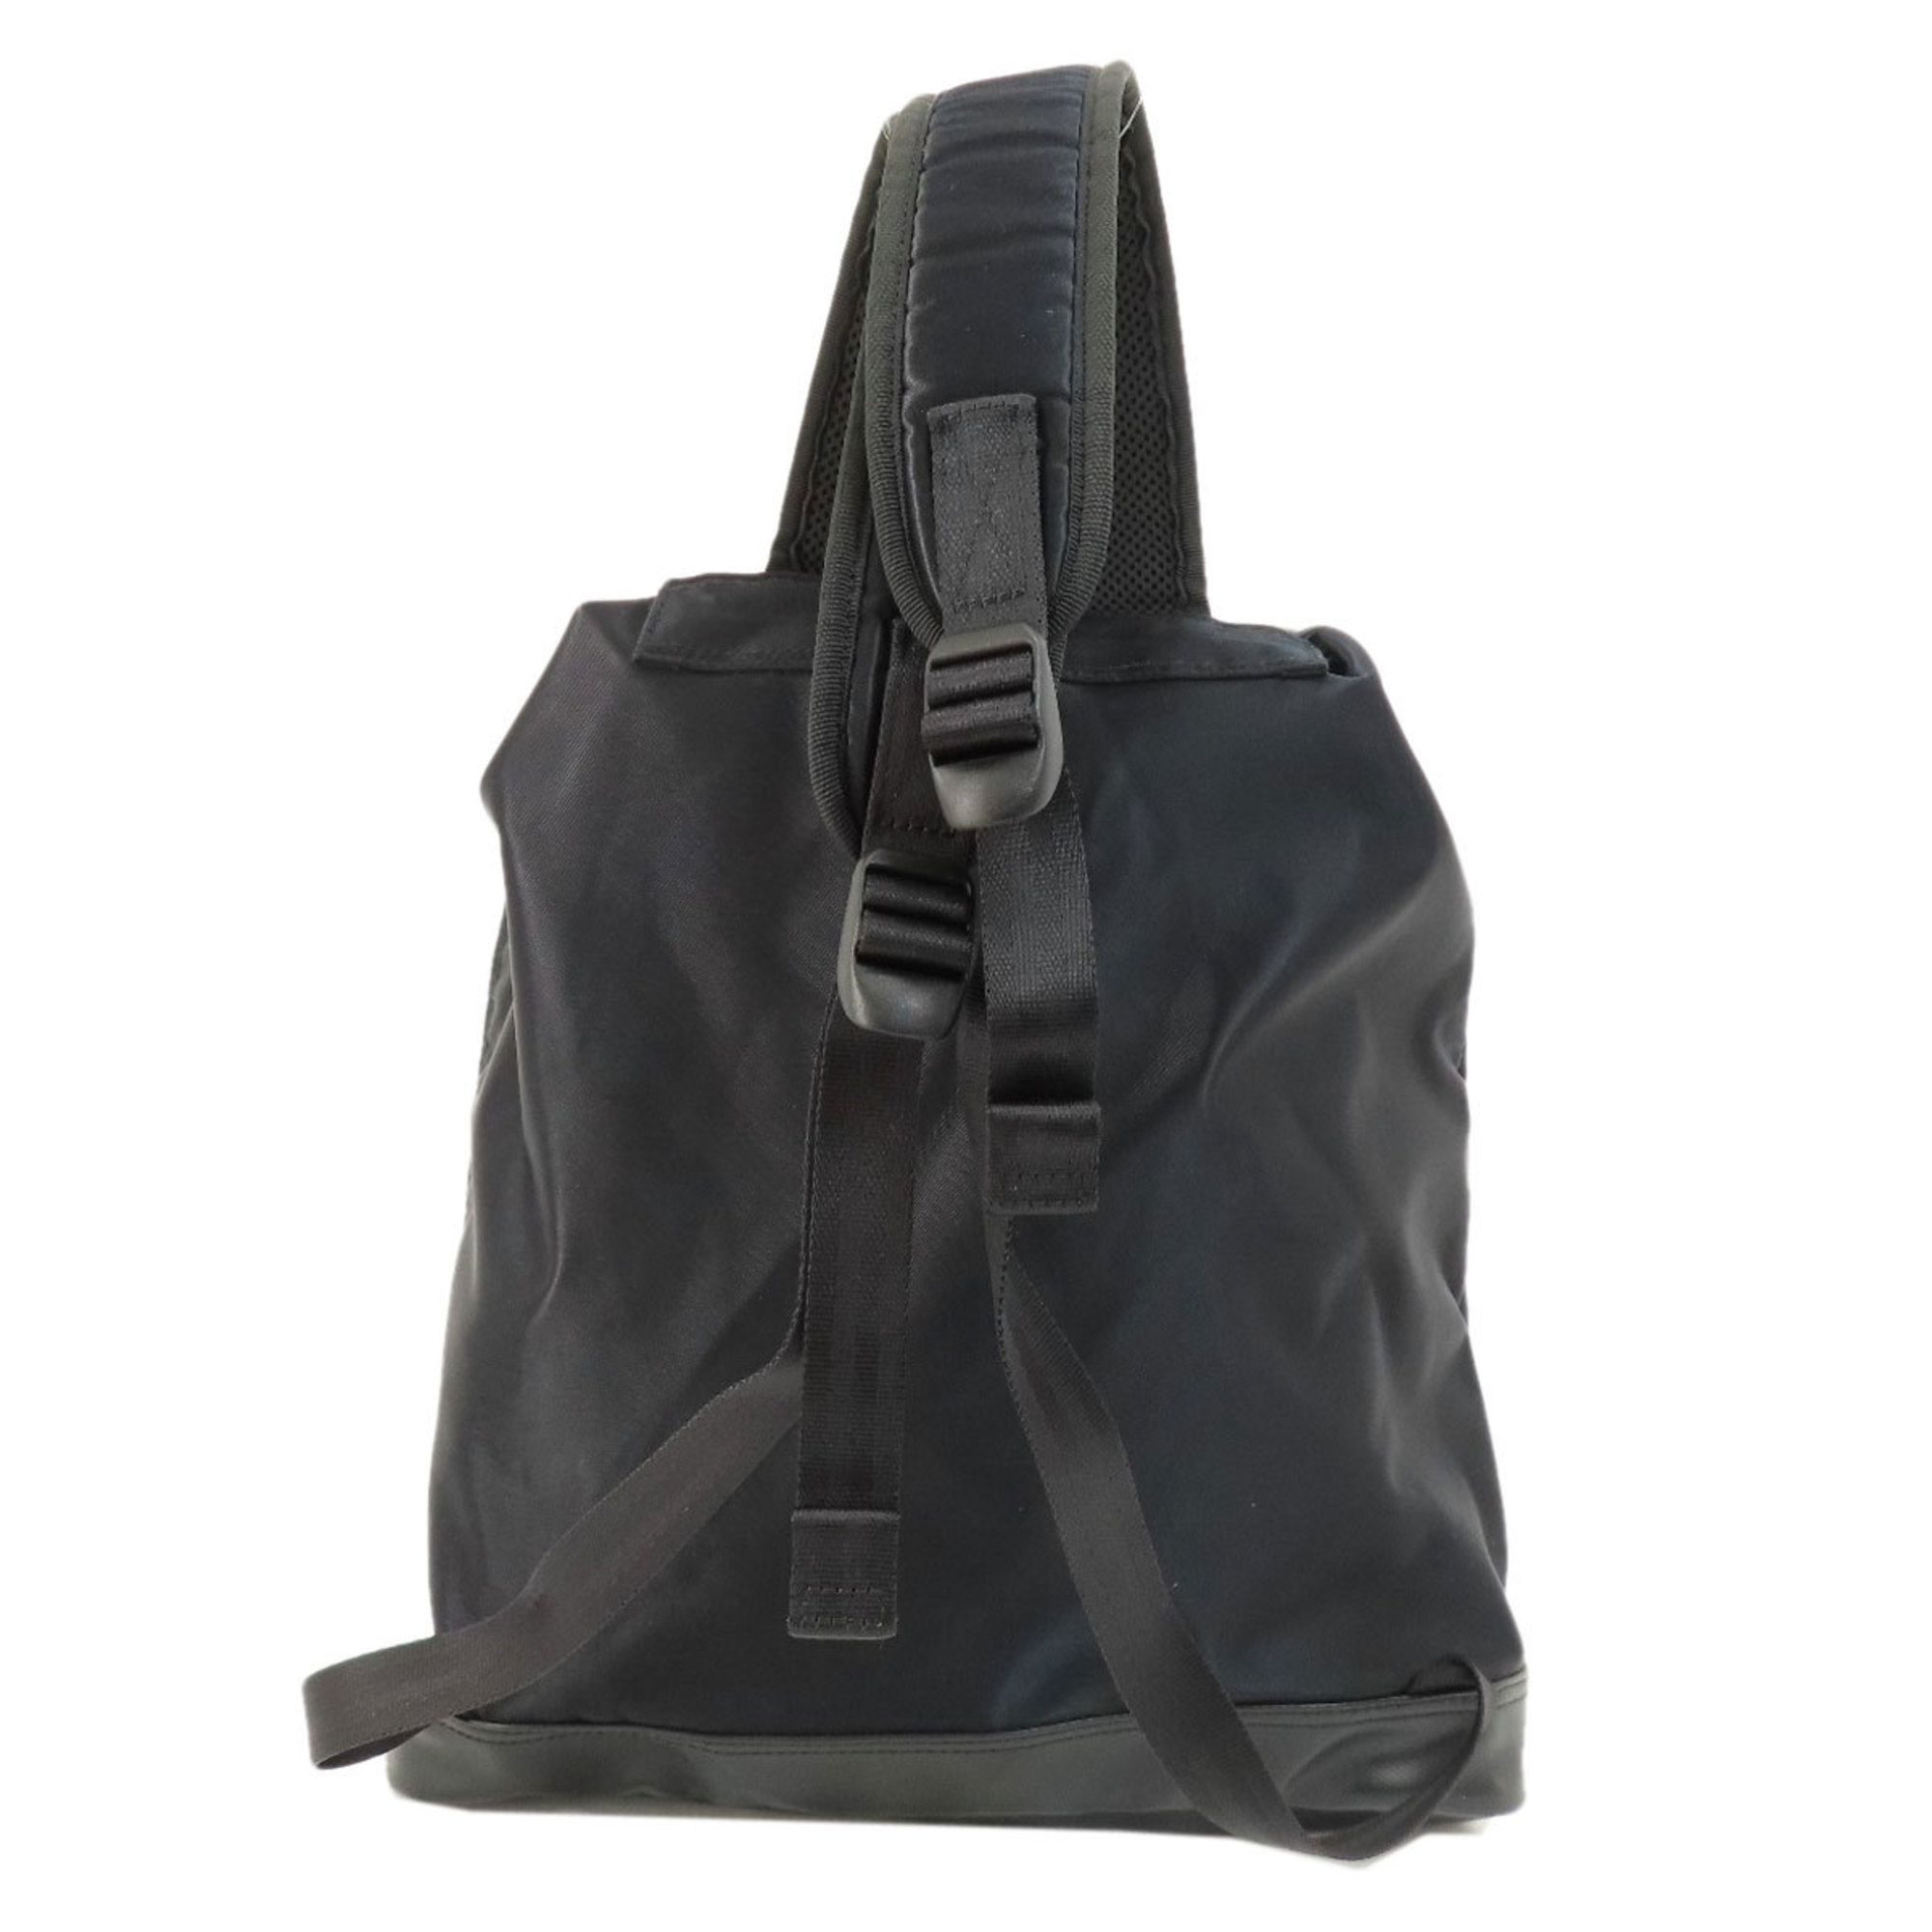 PORTER Backpacks and Daypacks, Nylon Material, Women's,